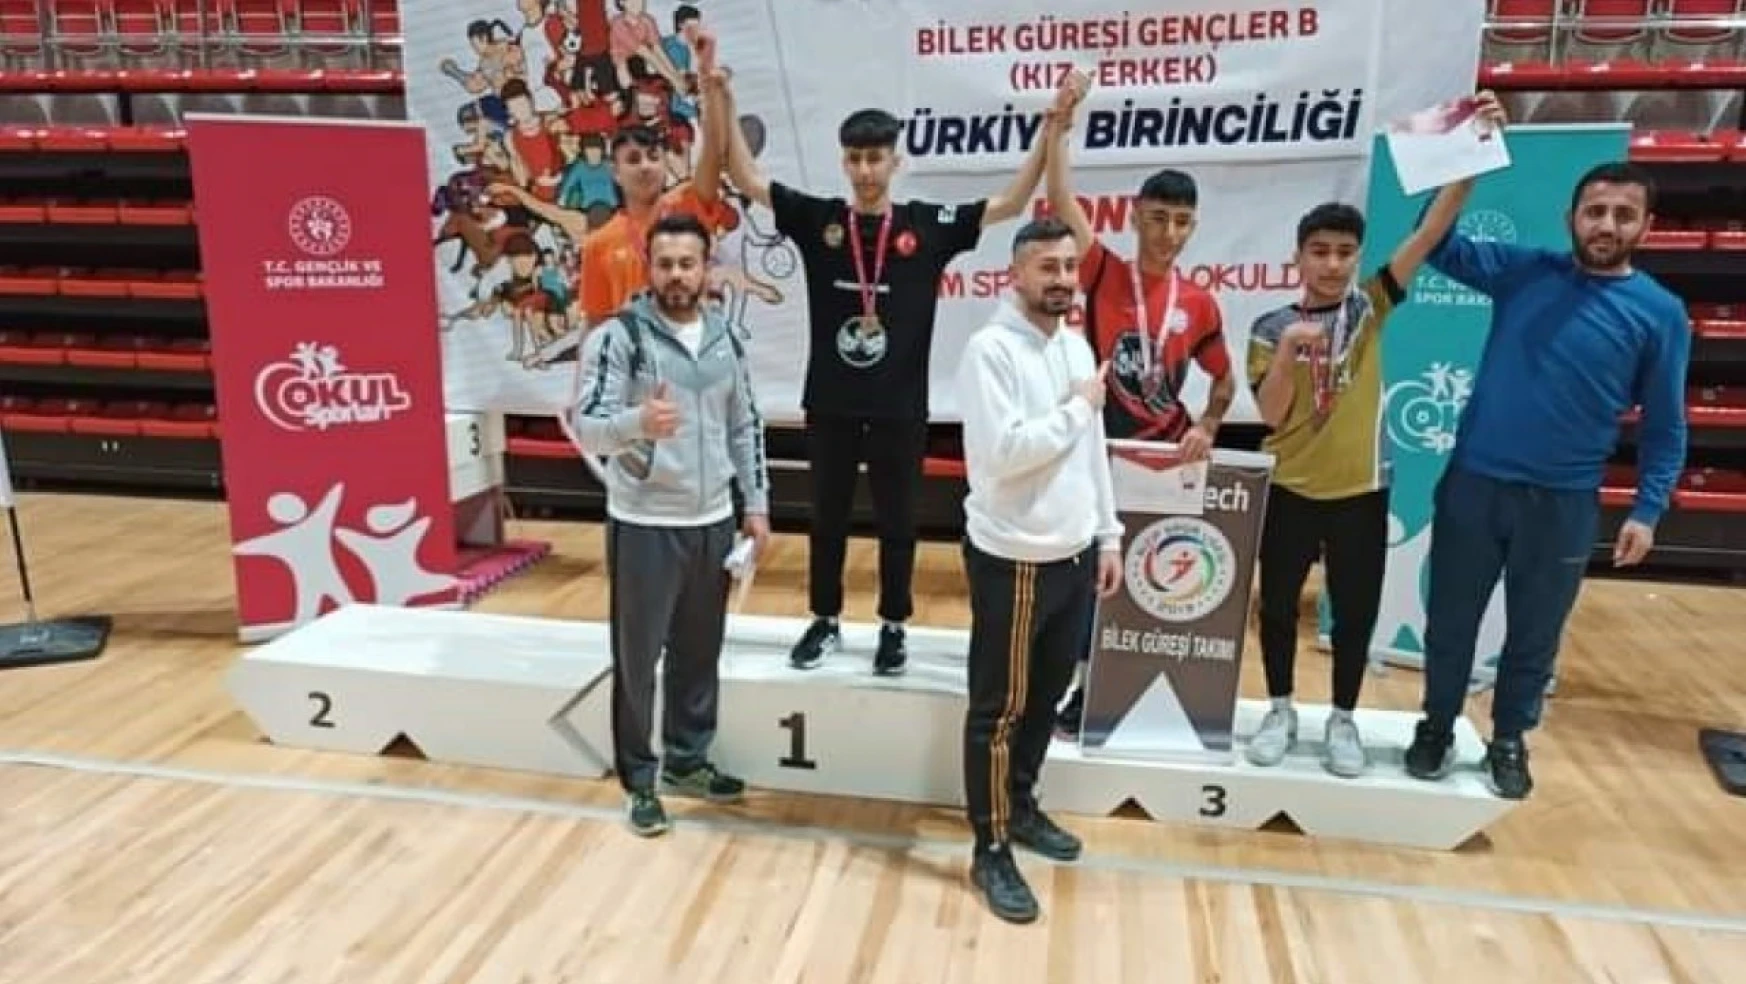 Güroymaklı öğrenci bilek güreşinde Türkiye ikincisi oldu